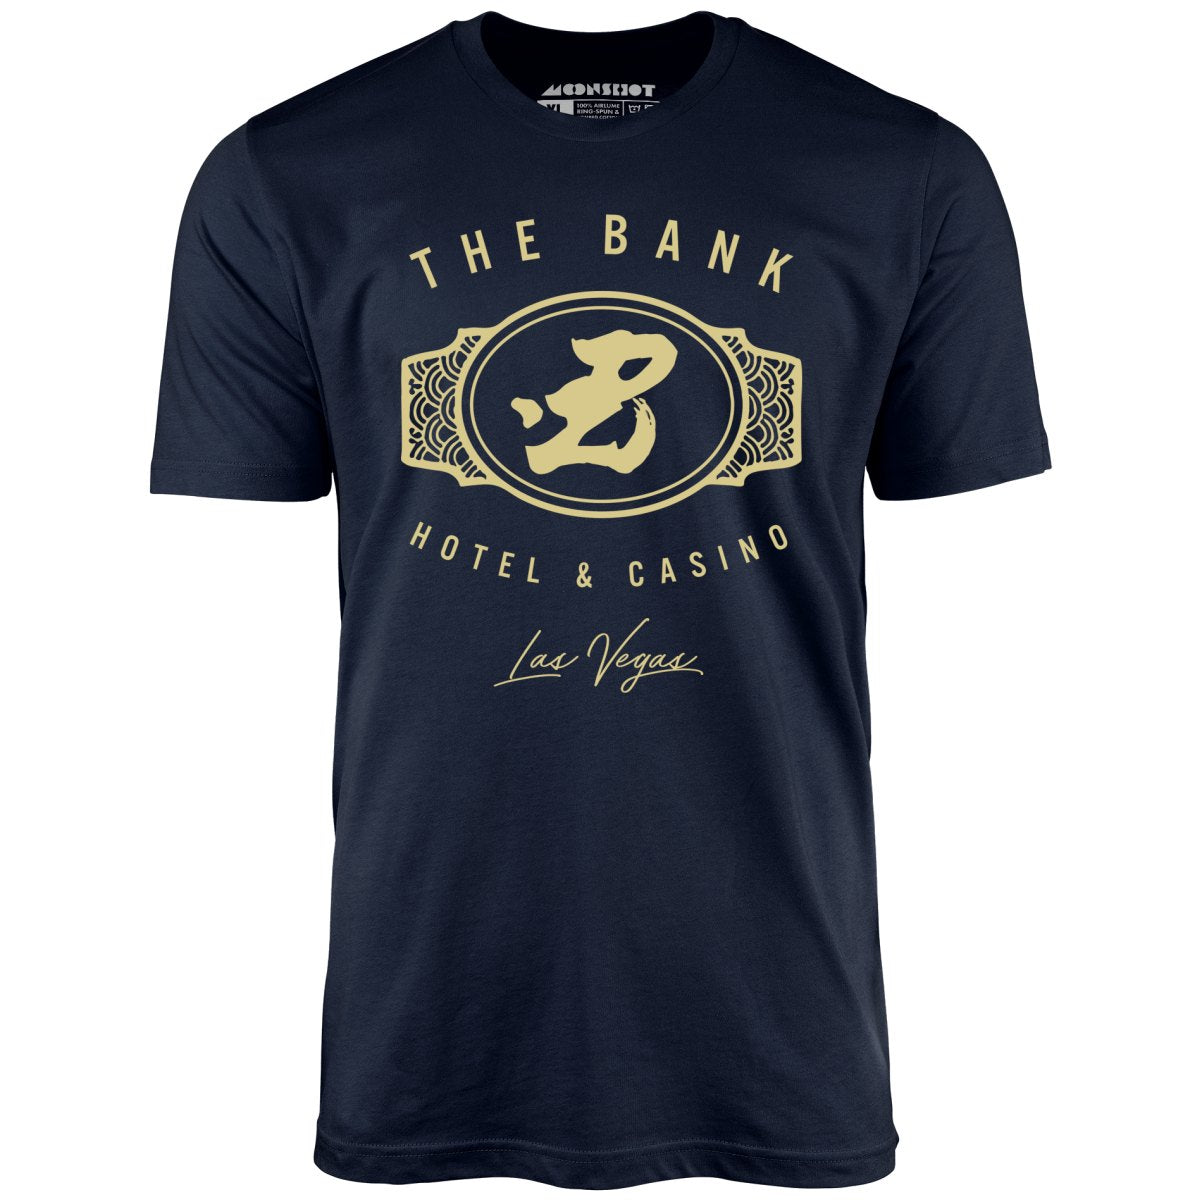 The Bank Hotel & Casino - Ocean's Thirteen - Unisex T-Shirt